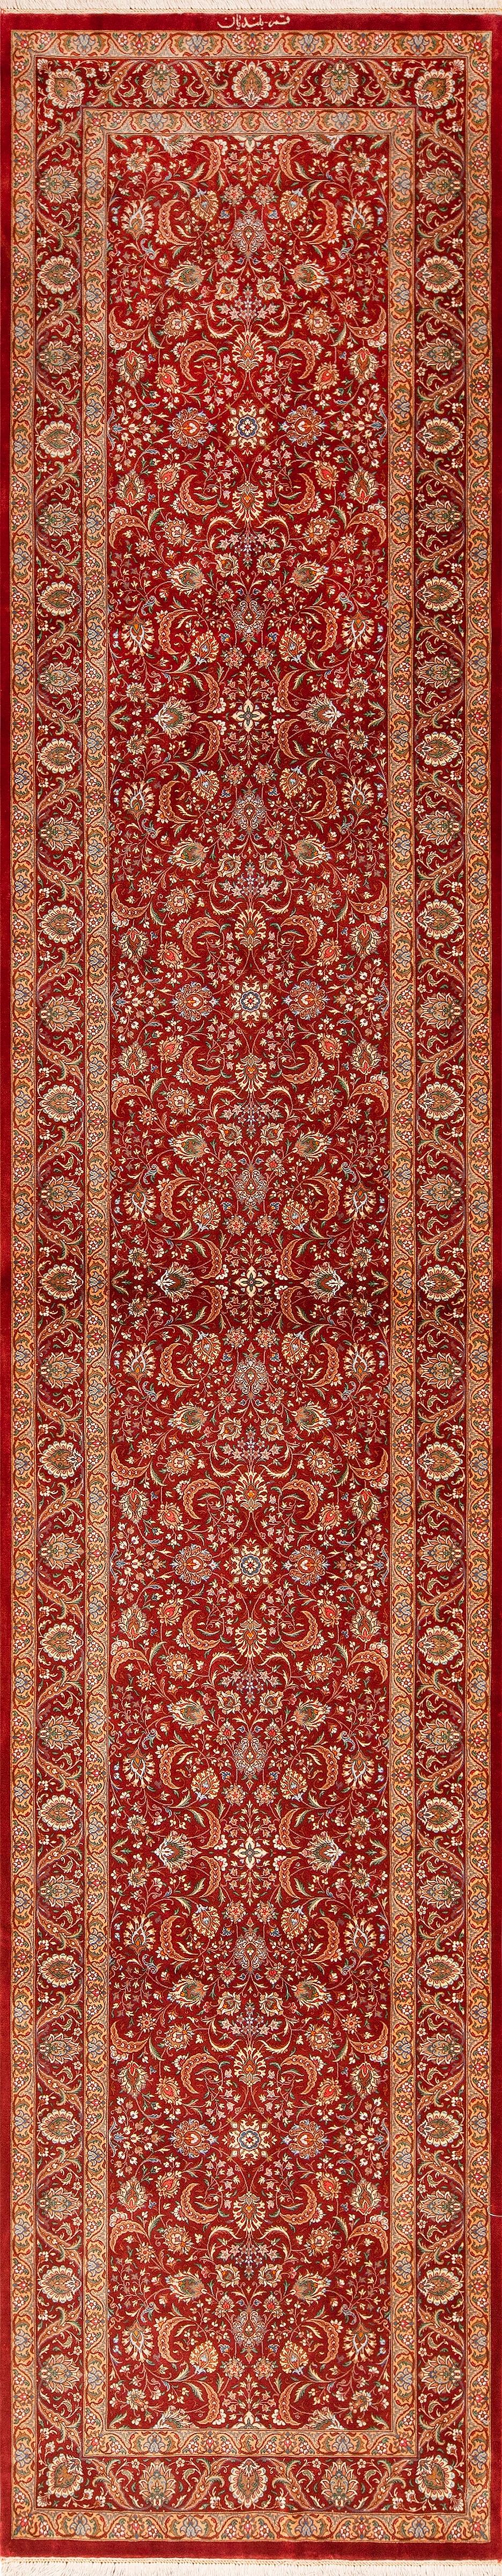 Tabriz Red Fine Floral Luxurious Vintage Persian Qum Silk Runner Rug 2'9